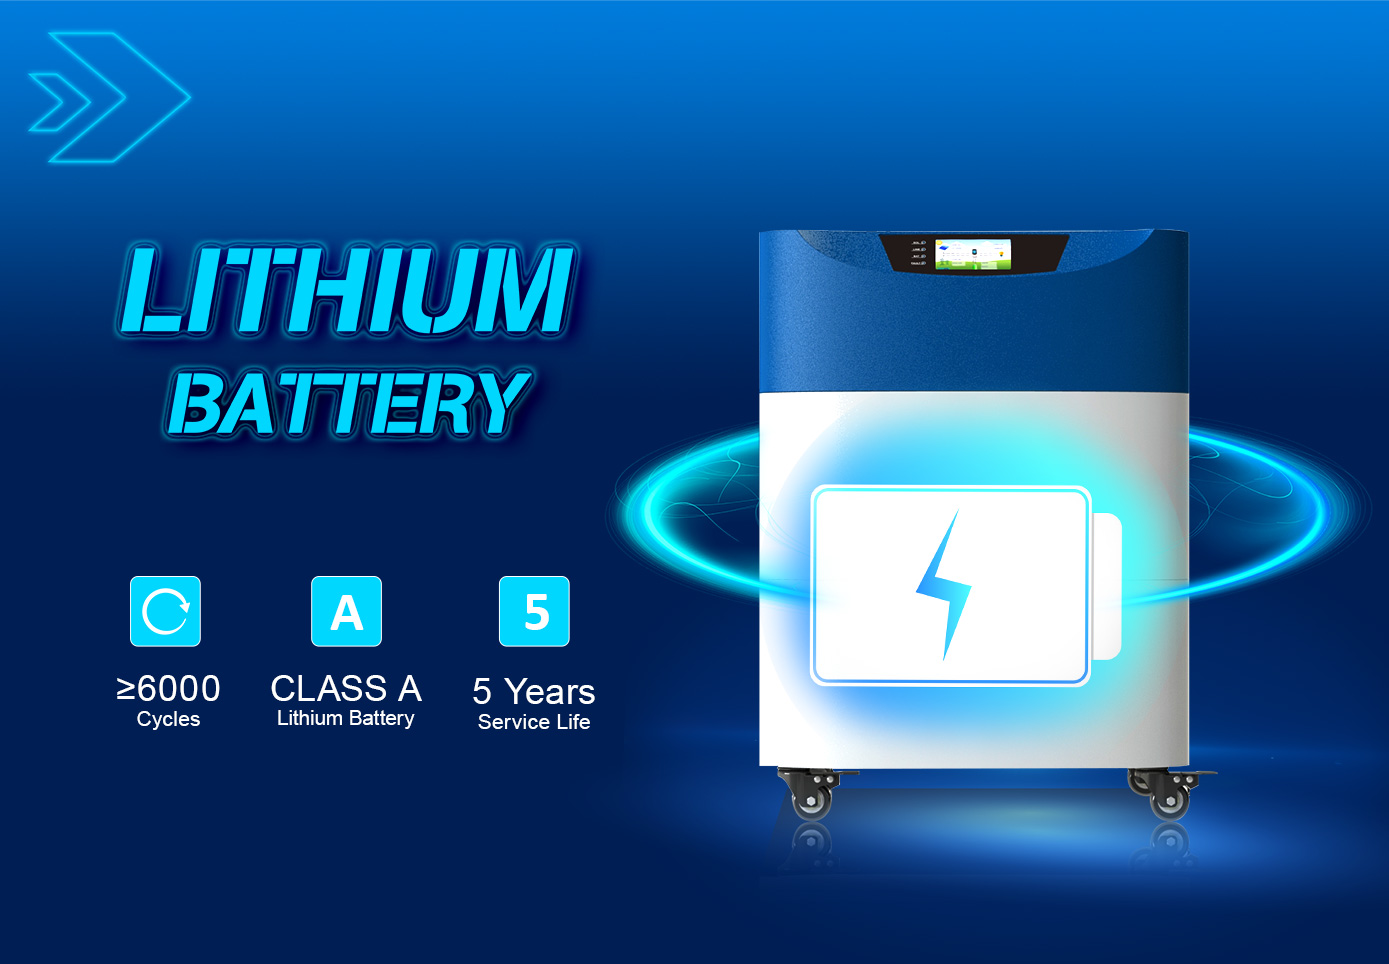 Bateria de lítio nova marca embutida de 6000 ciclos e tem uma vida útil de 5 anos.